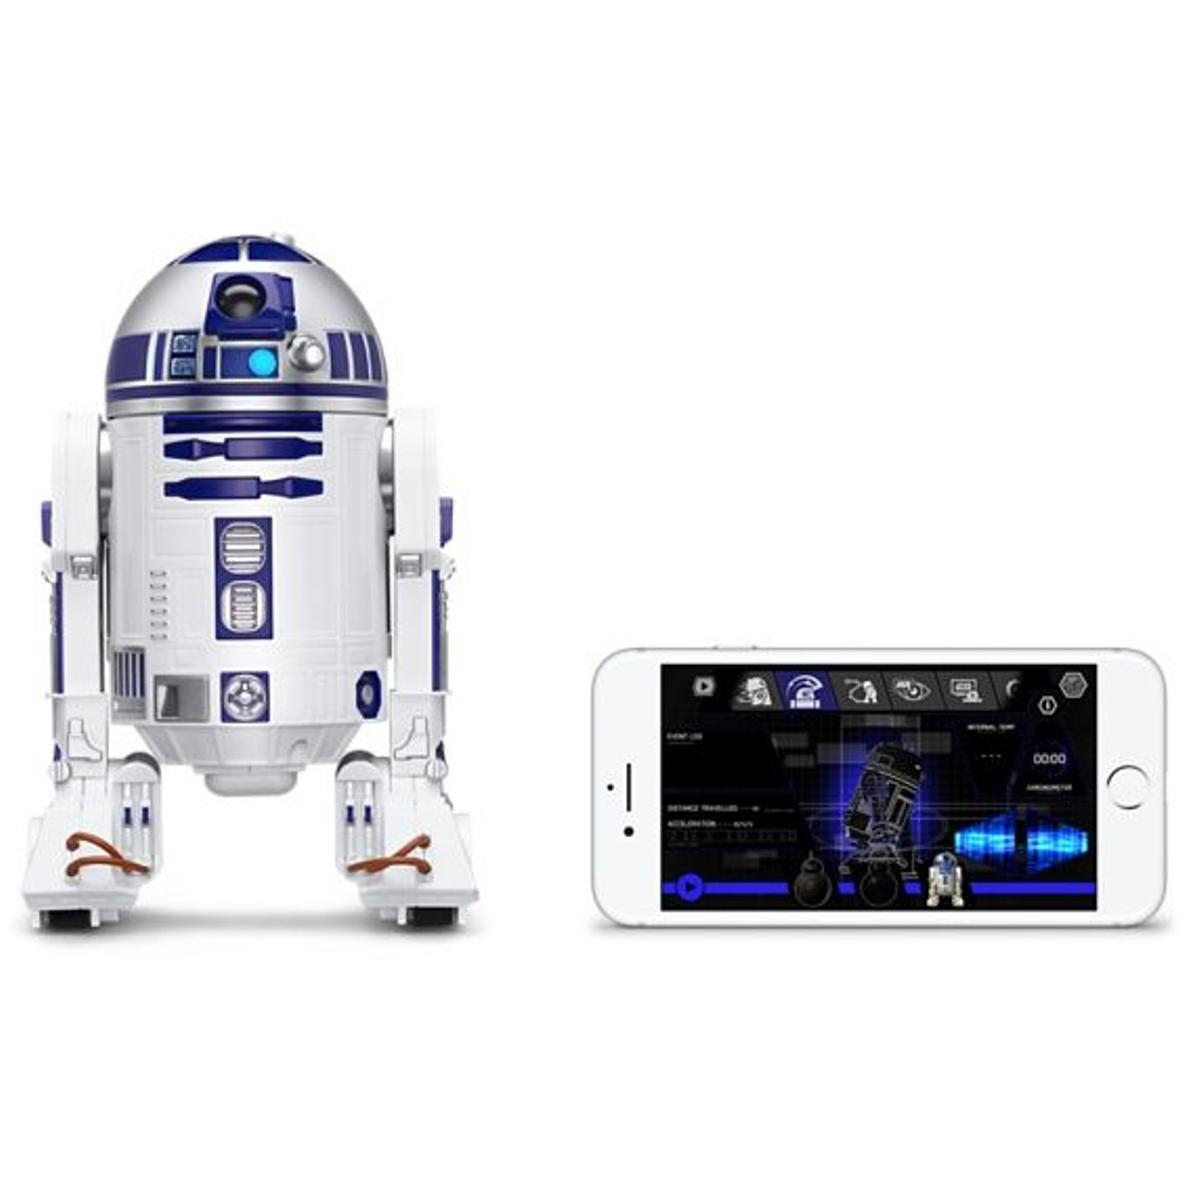 Droide R2-D2 controlado por app